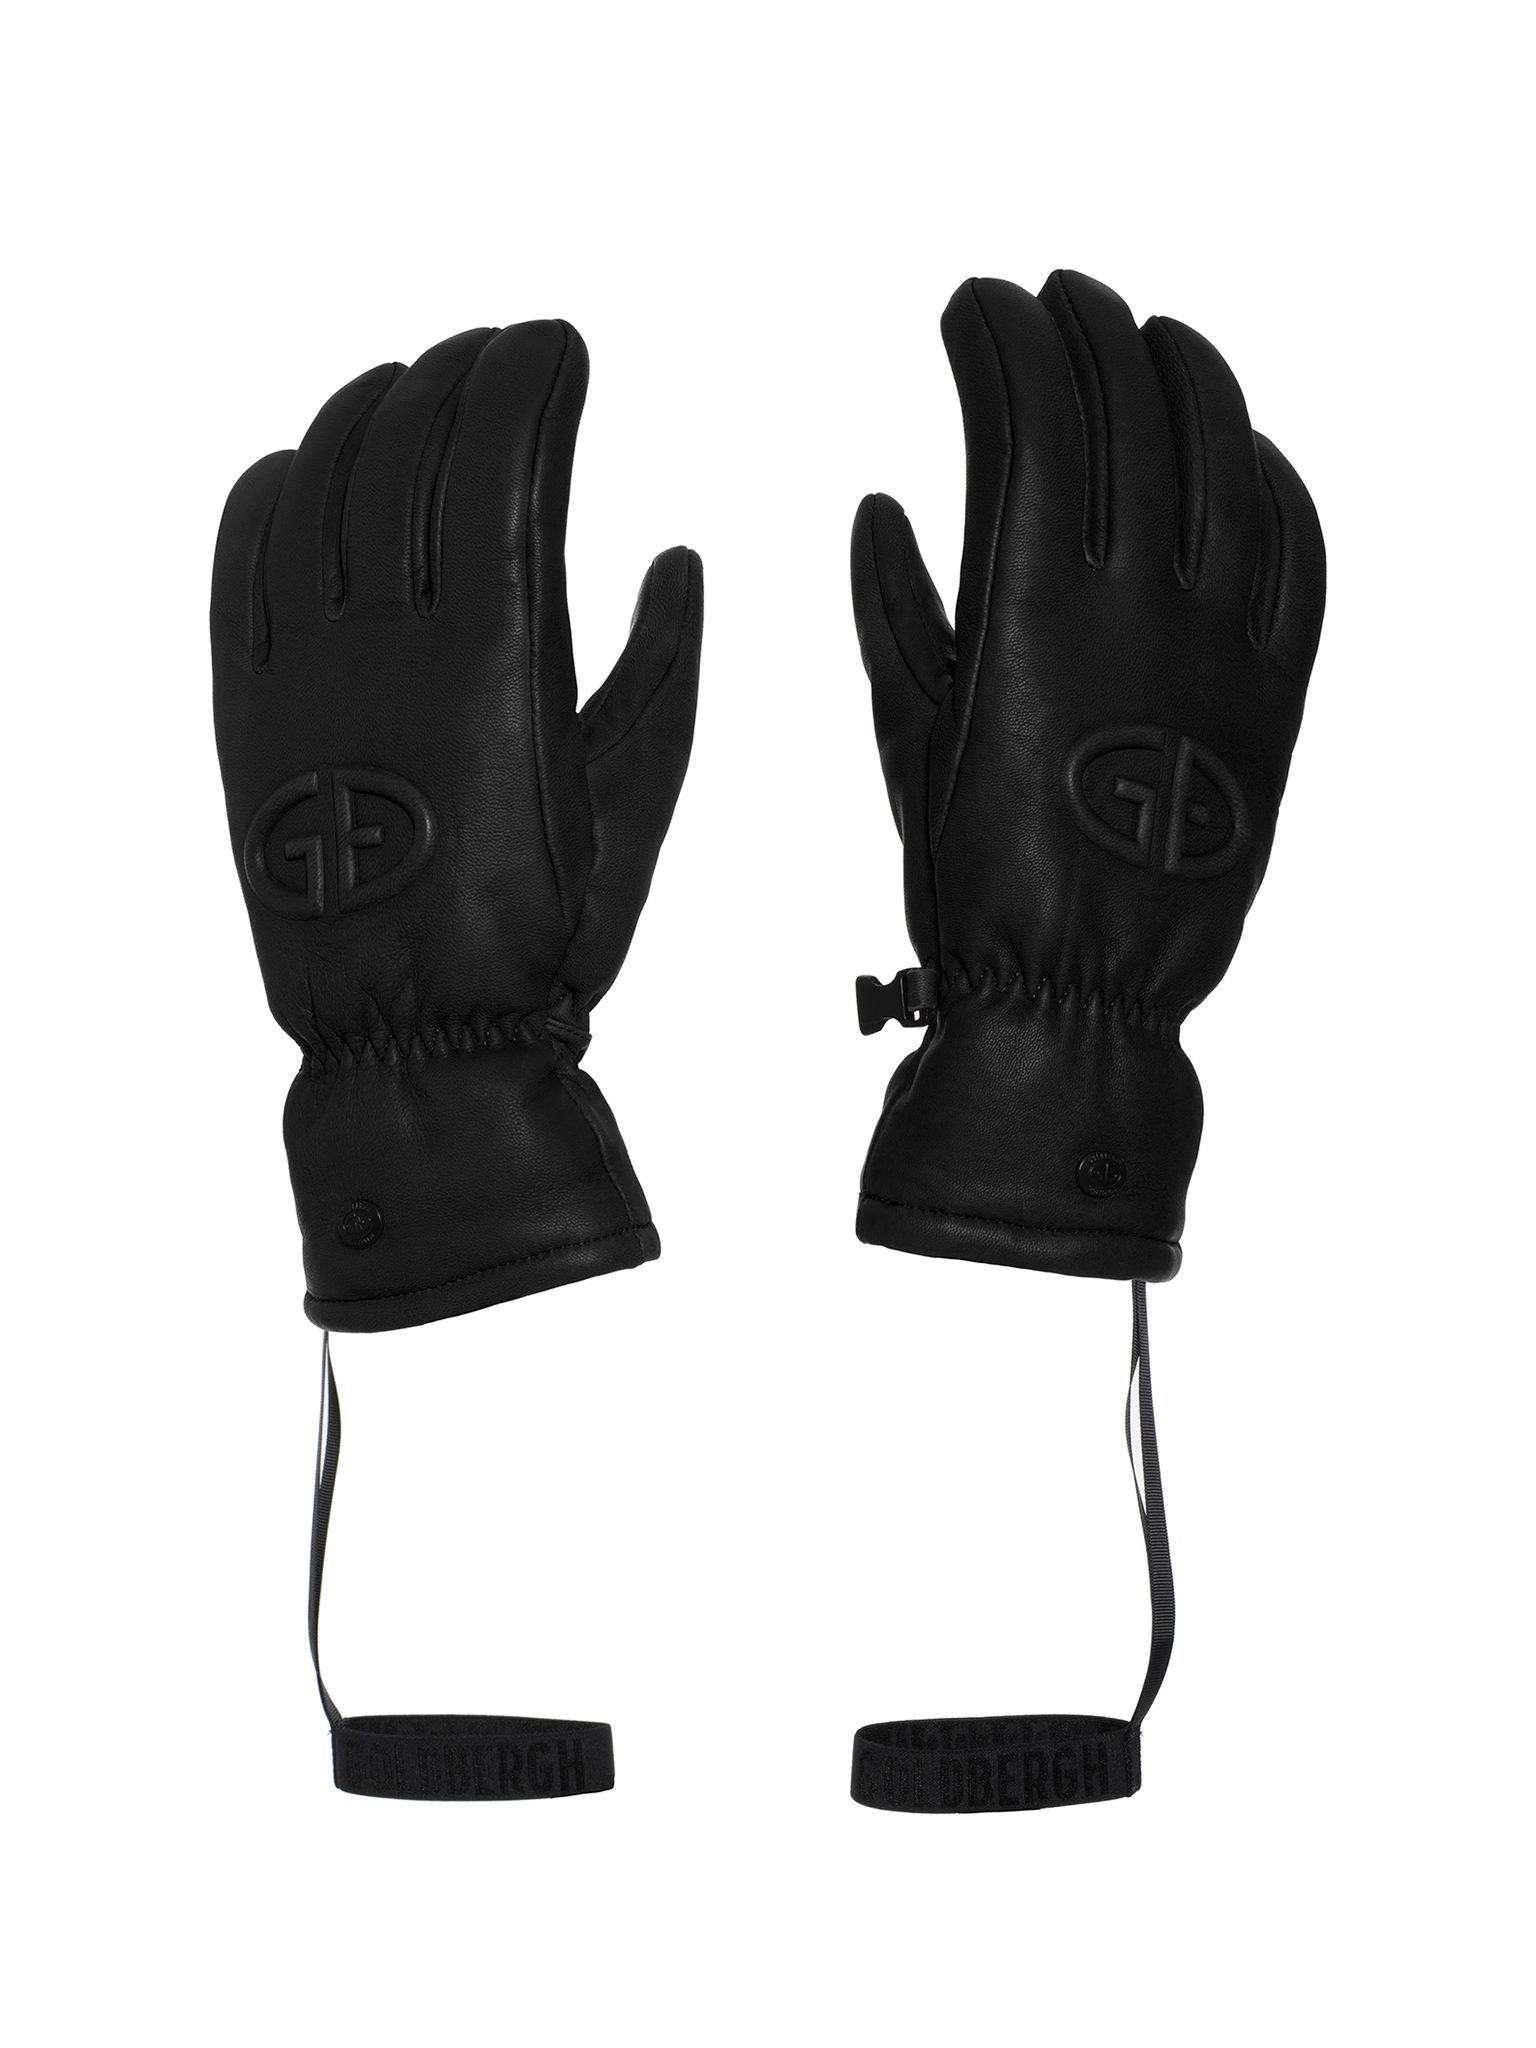 Goldbergh rukavice Freeze black Velikost: 7